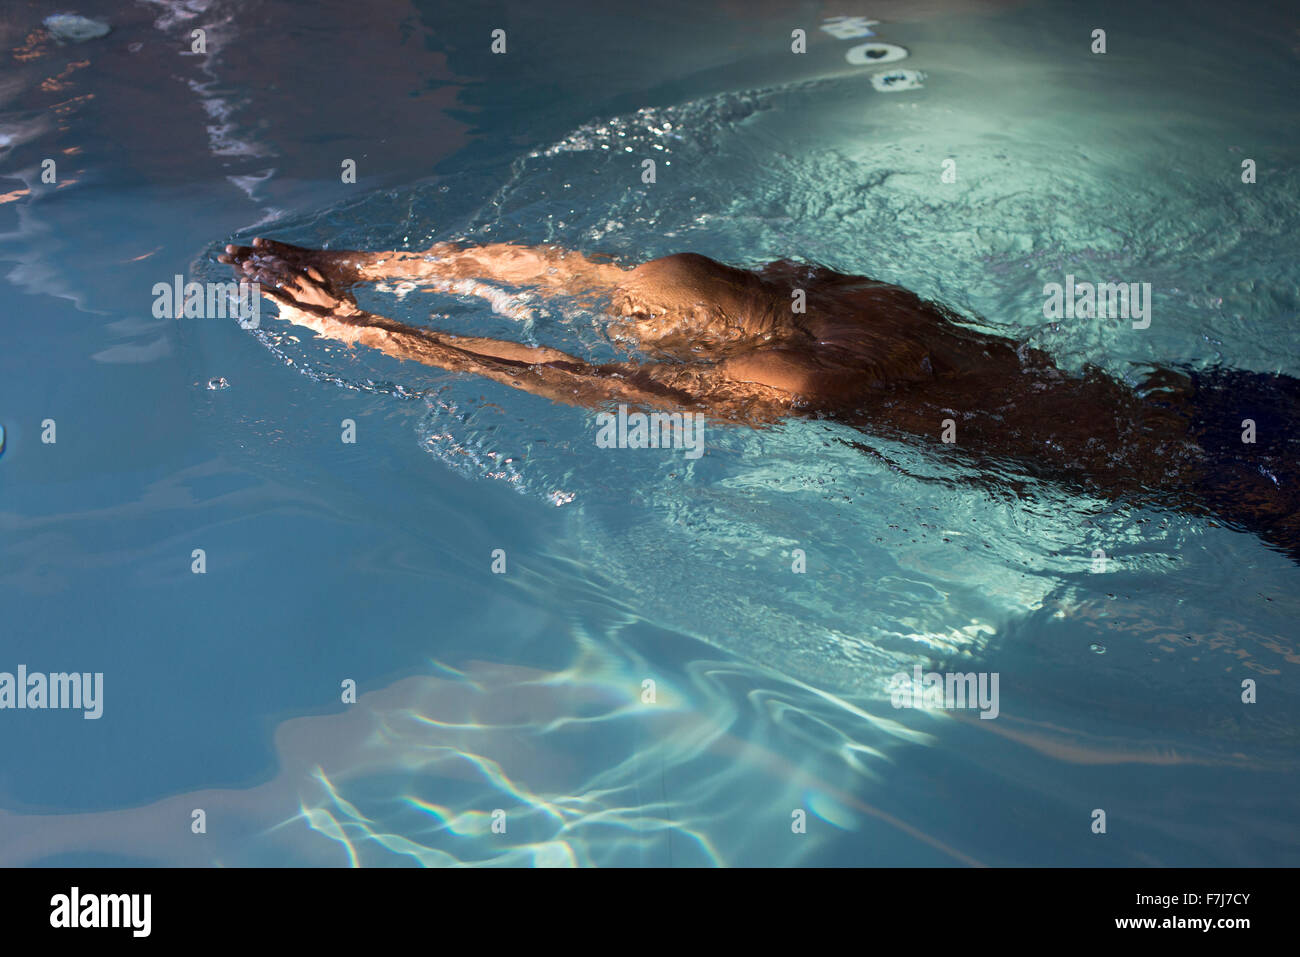 Man swimming in pool Stock Photo